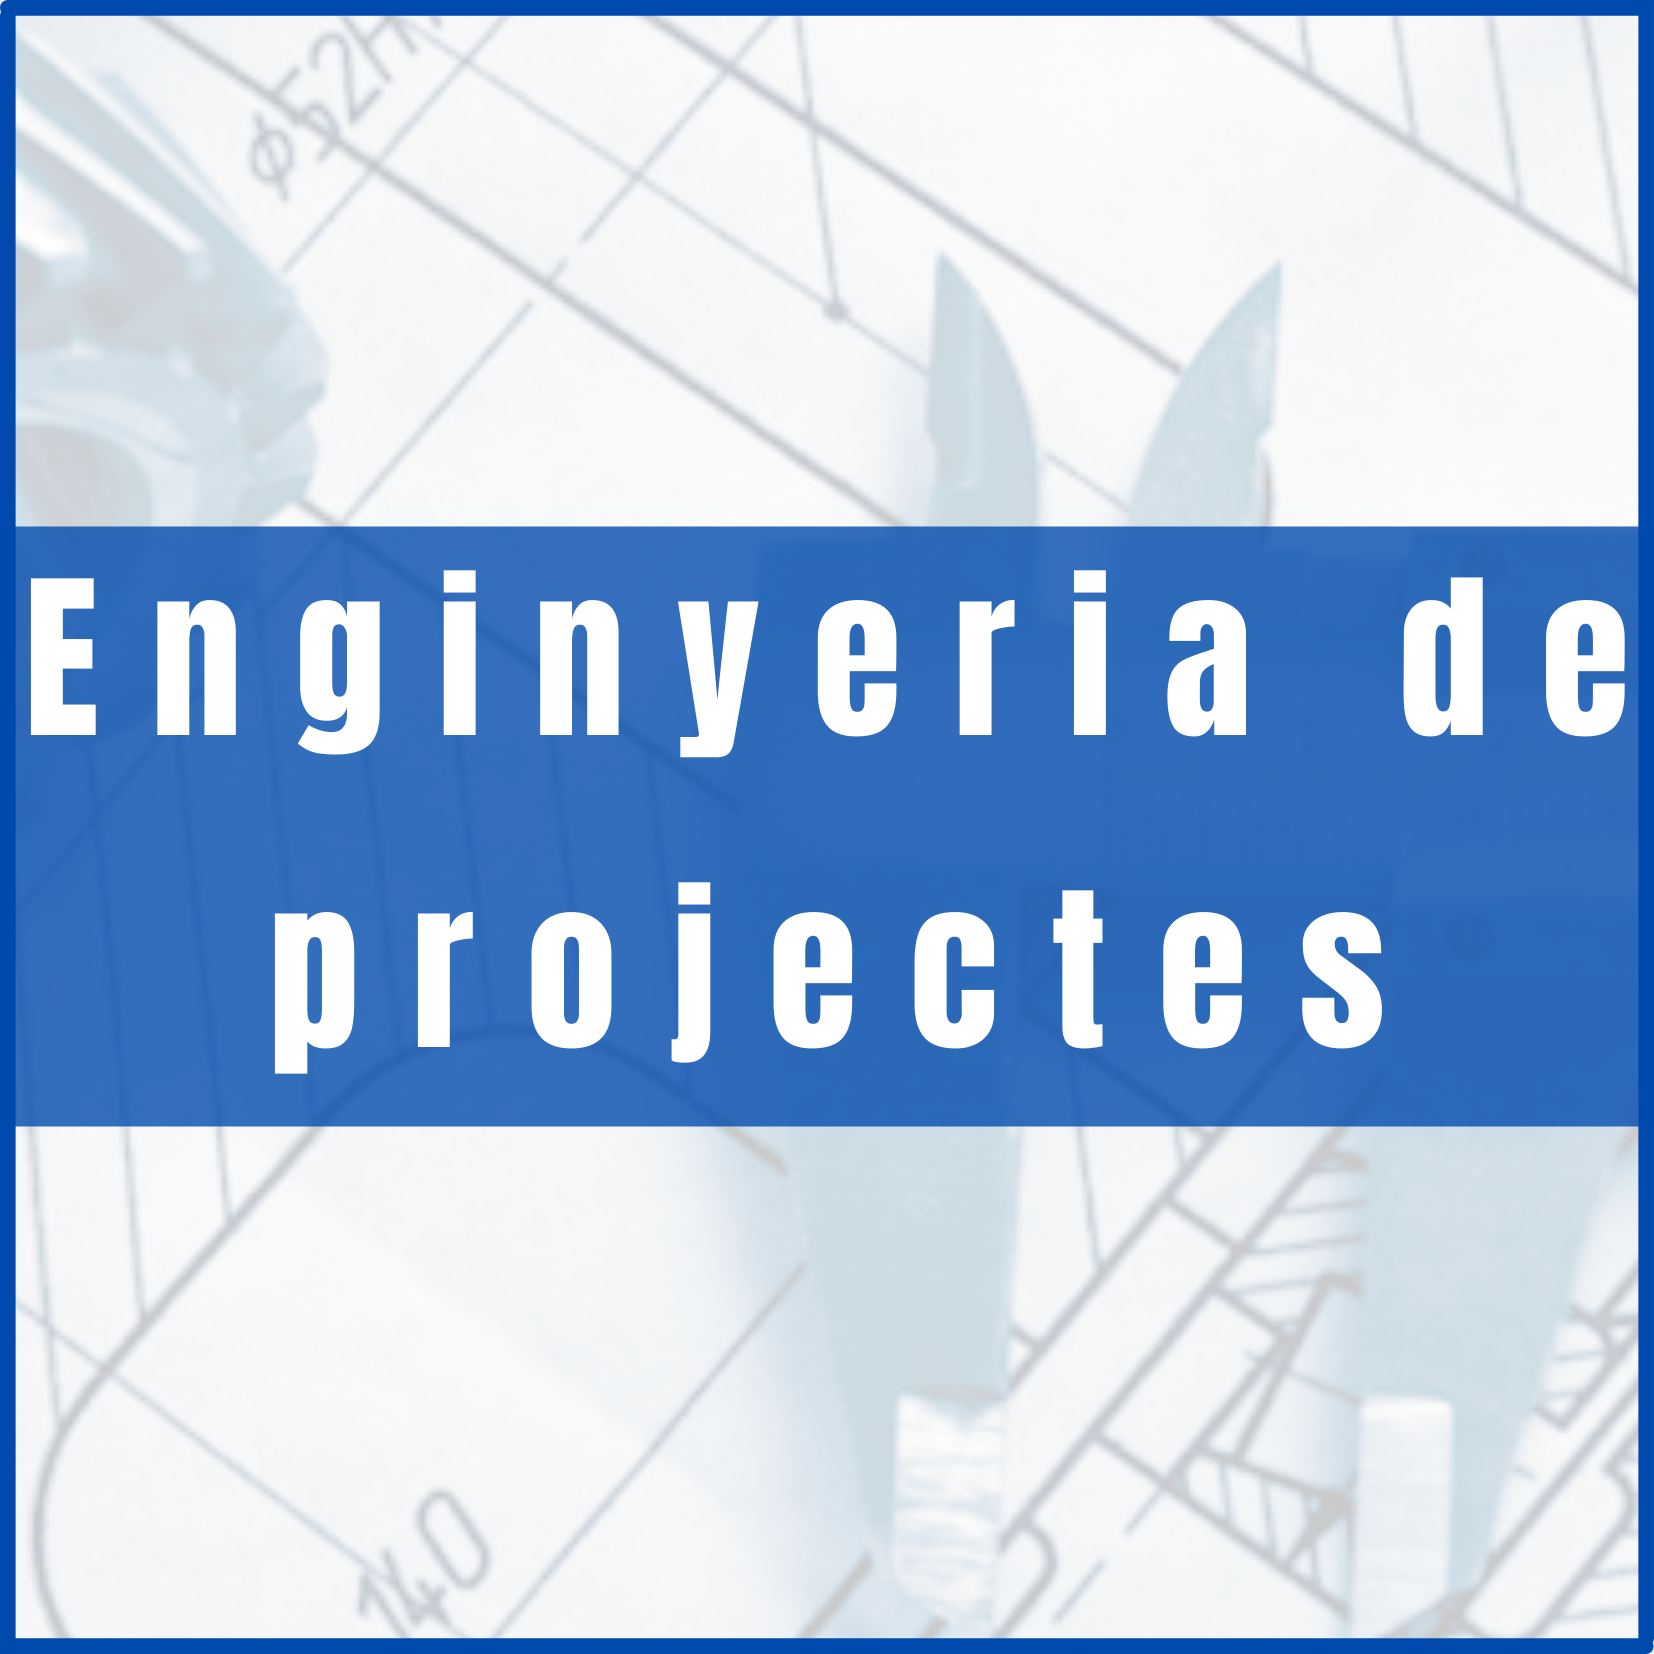 enginyeria de projectes